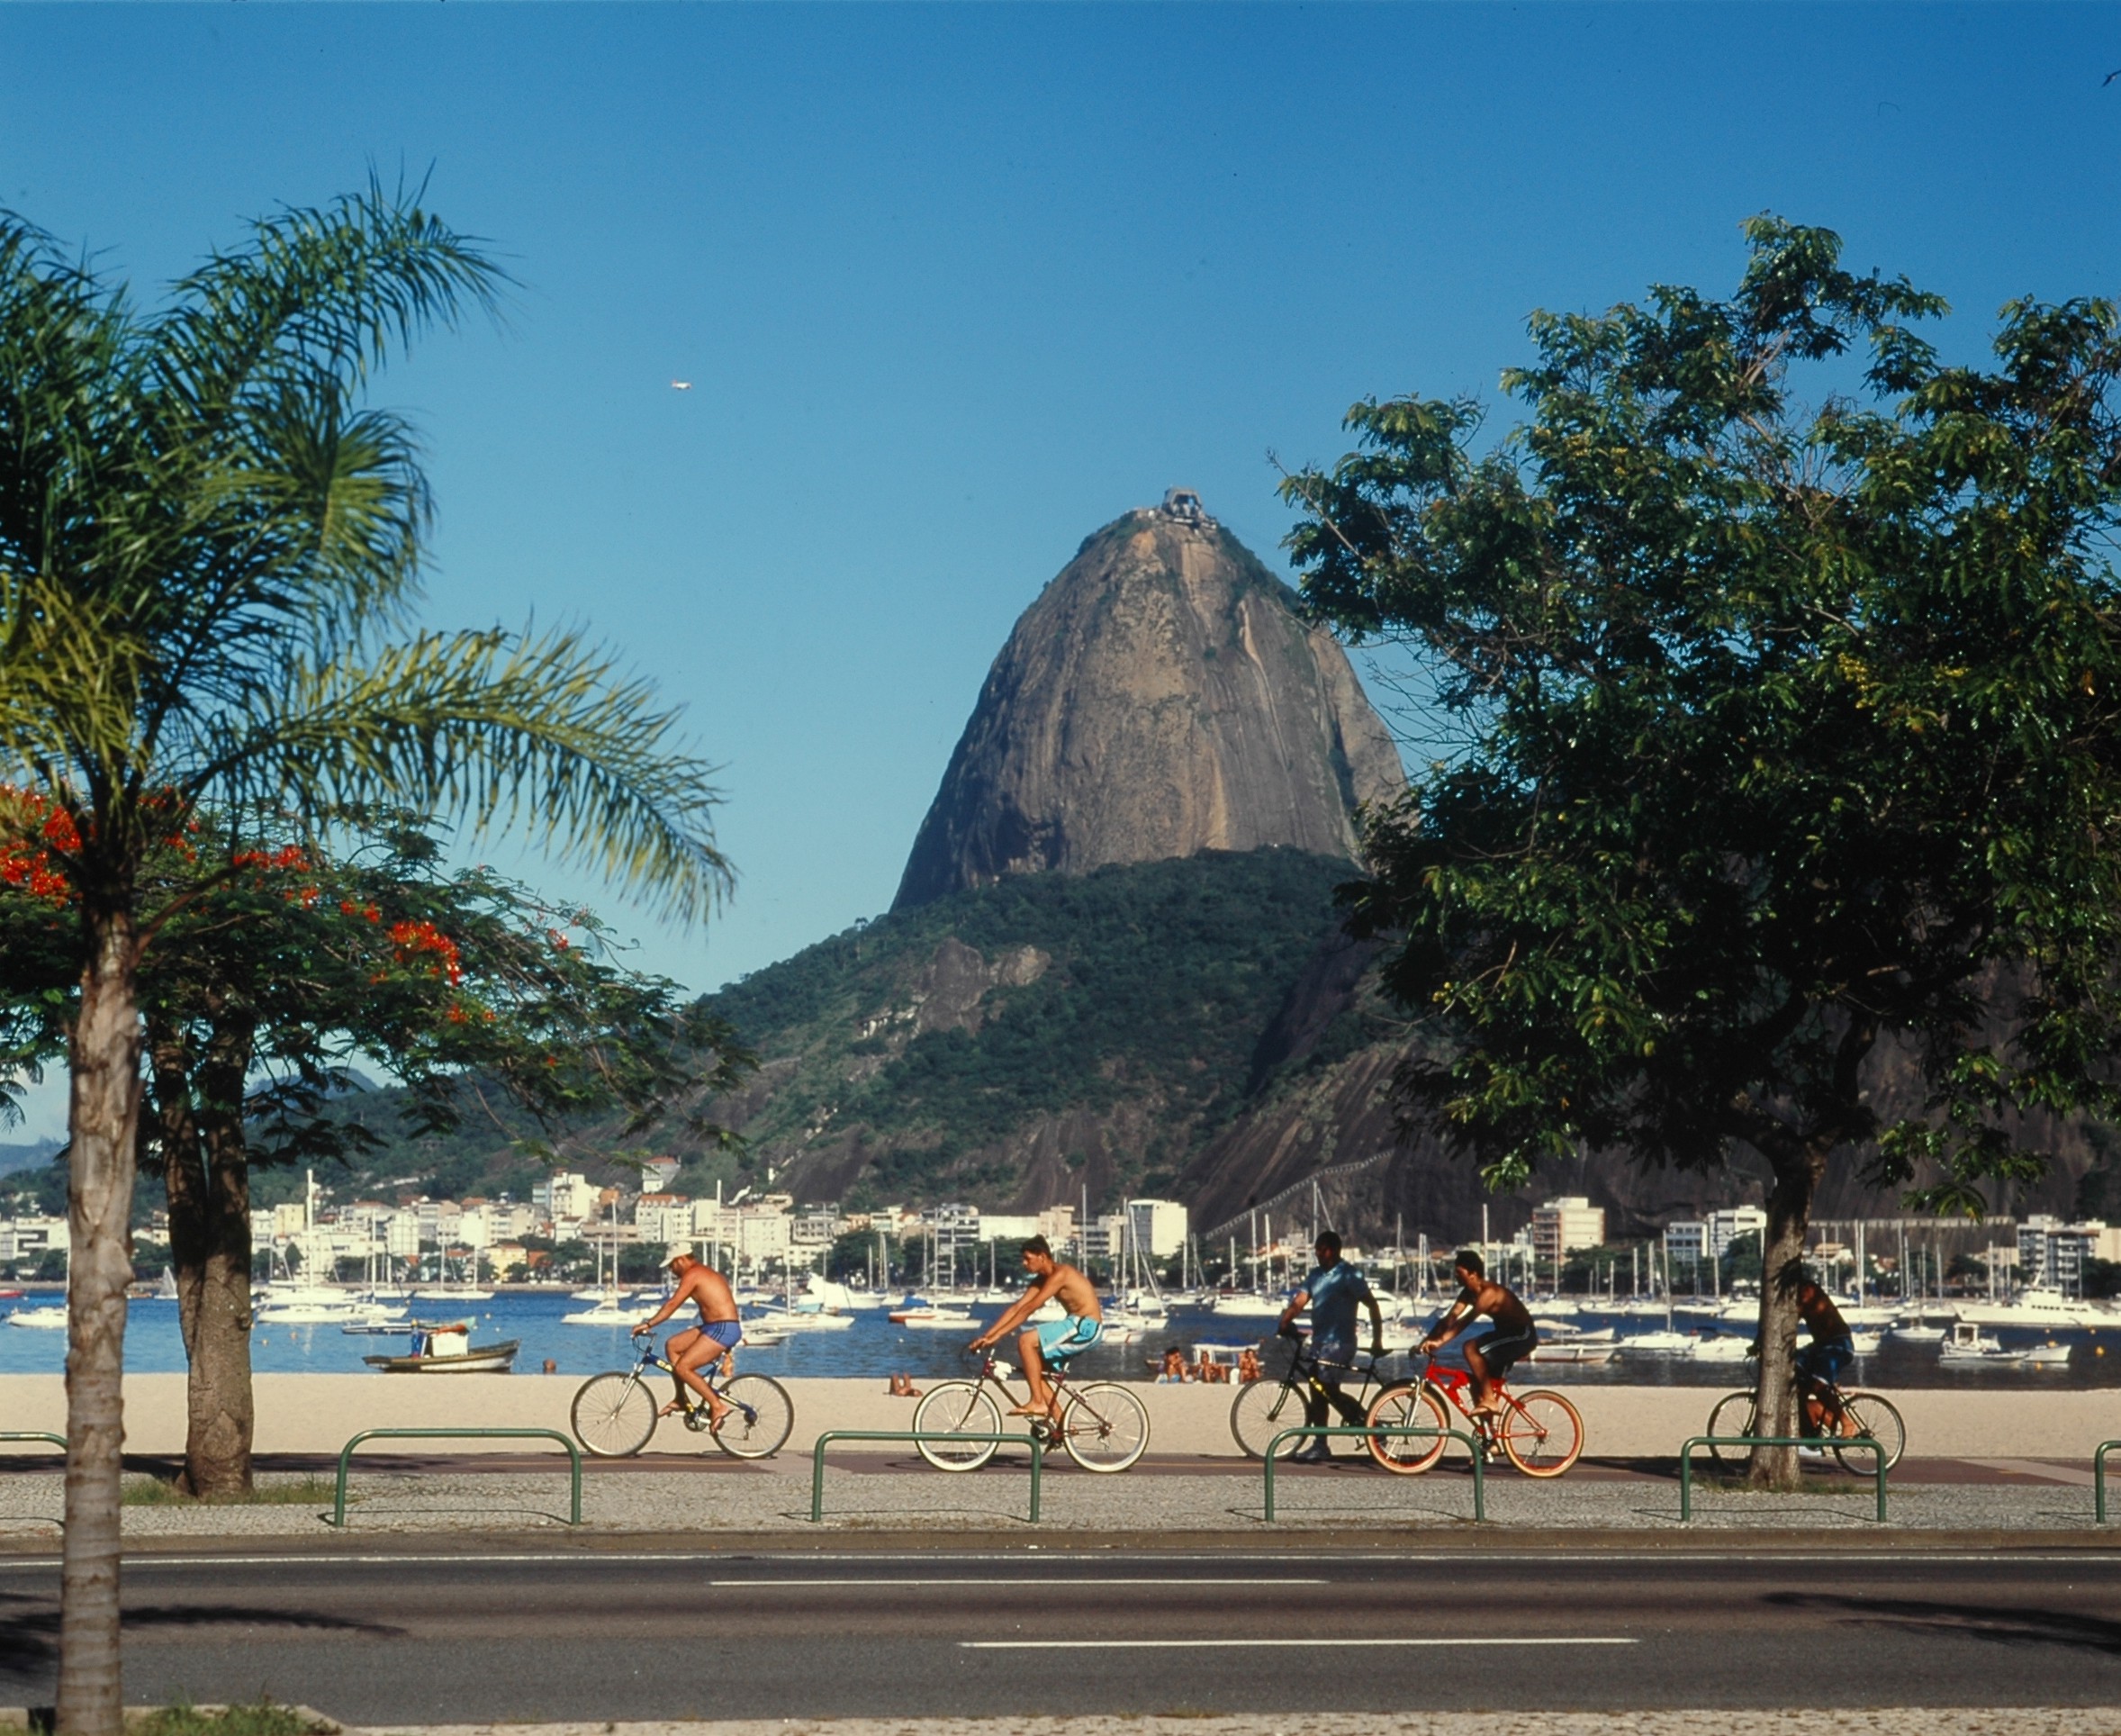 Rio de Janeiro: 1985 and Today